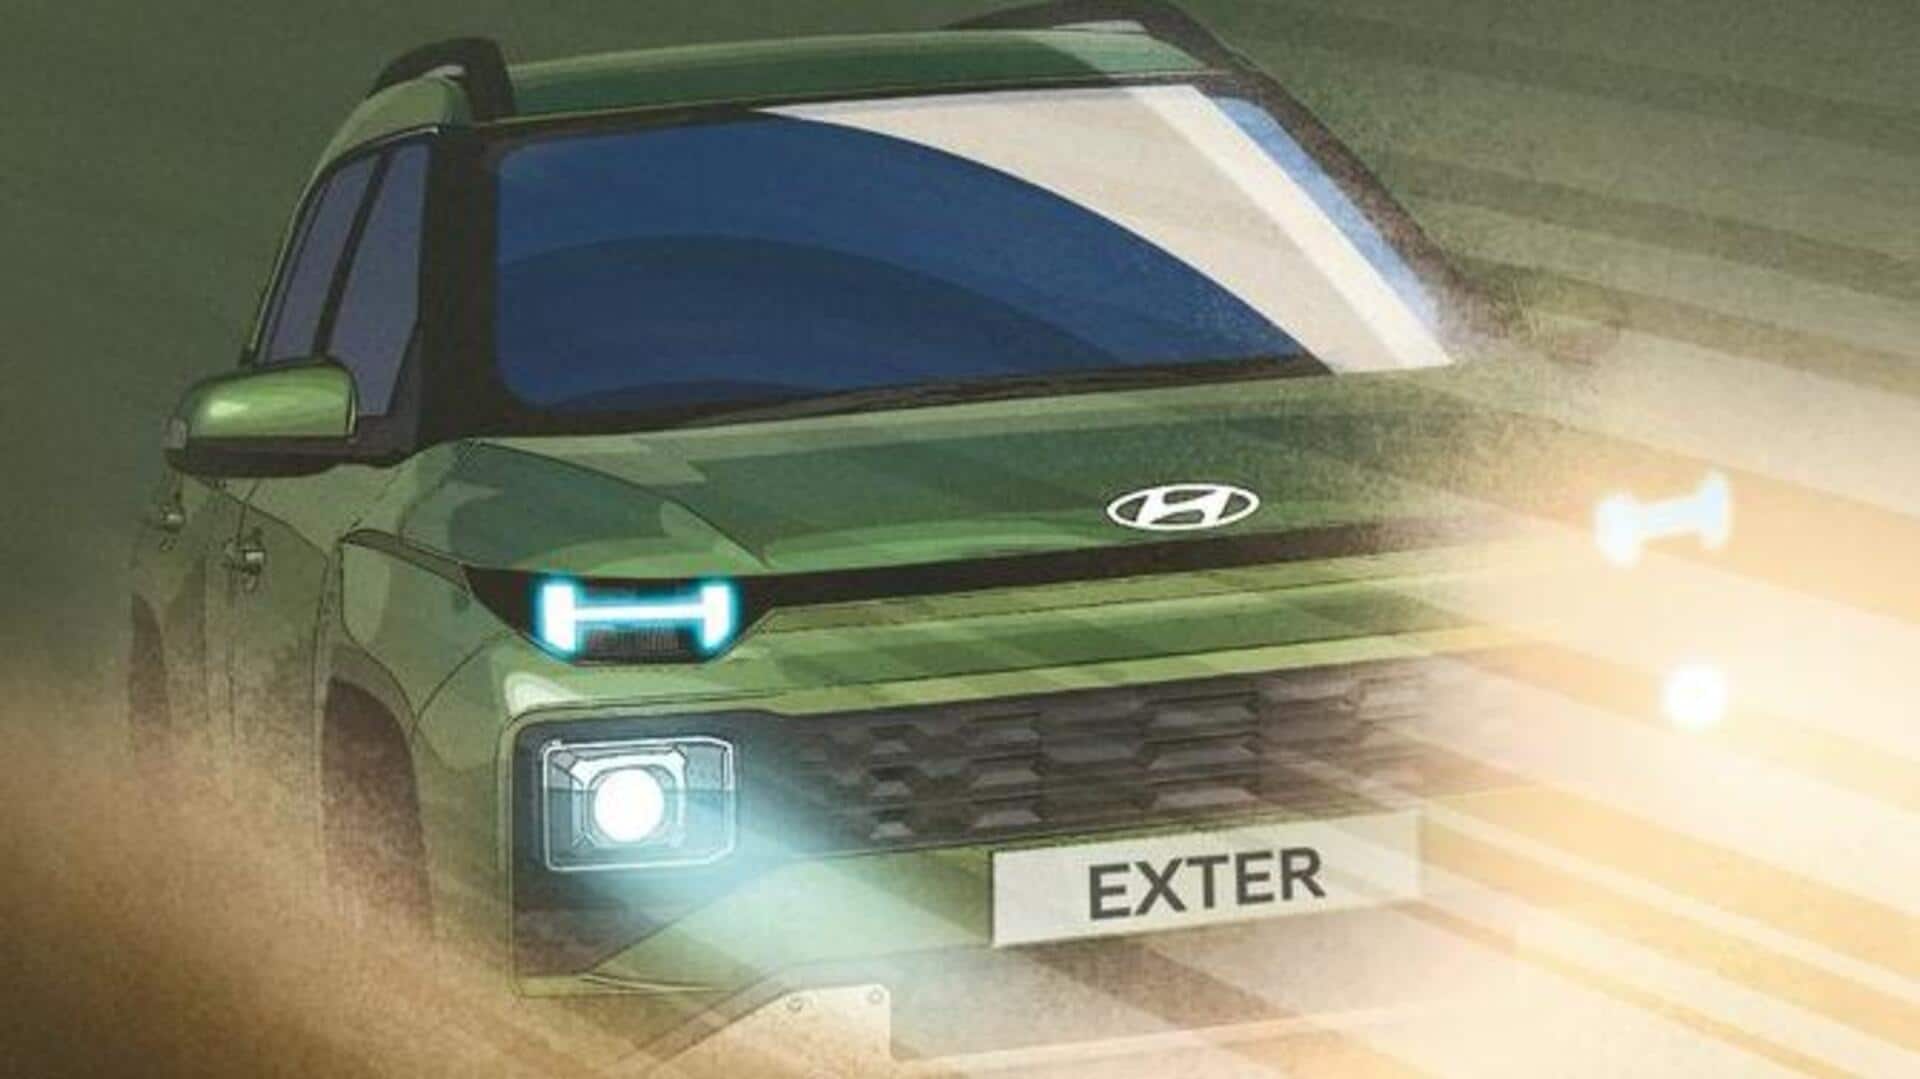 हुंडई की अपकमिंग एक्सटर SUV काे मिलेगा शानदार लुक, डिजाइन रेंडर से उठा पर्दा 